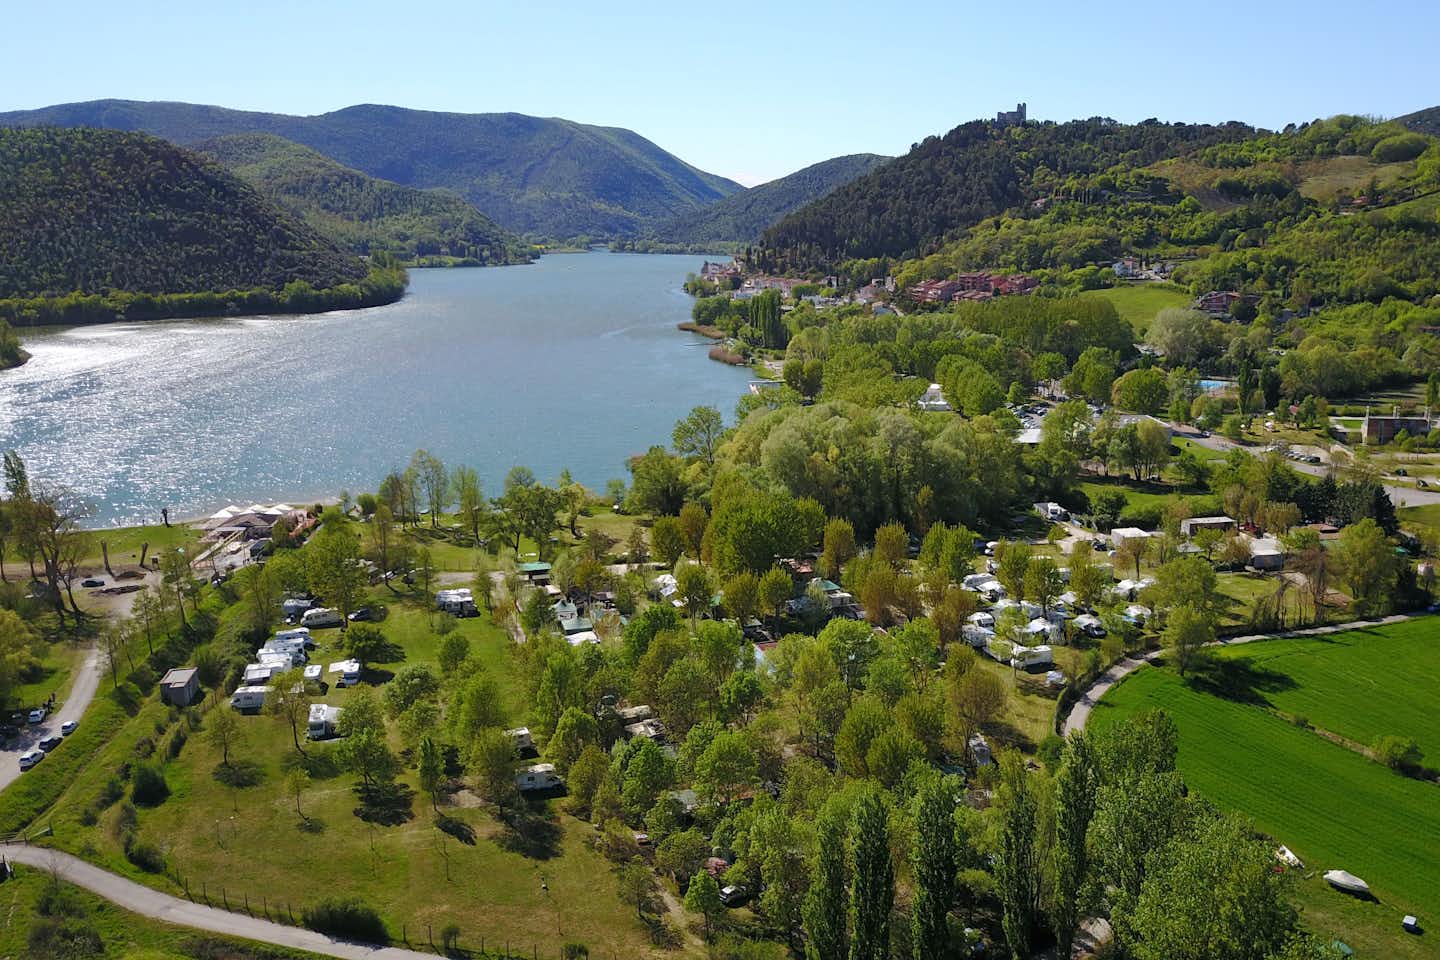 Camping Lago di Piediluco - Luftaufnahme vom Campingplatz am See